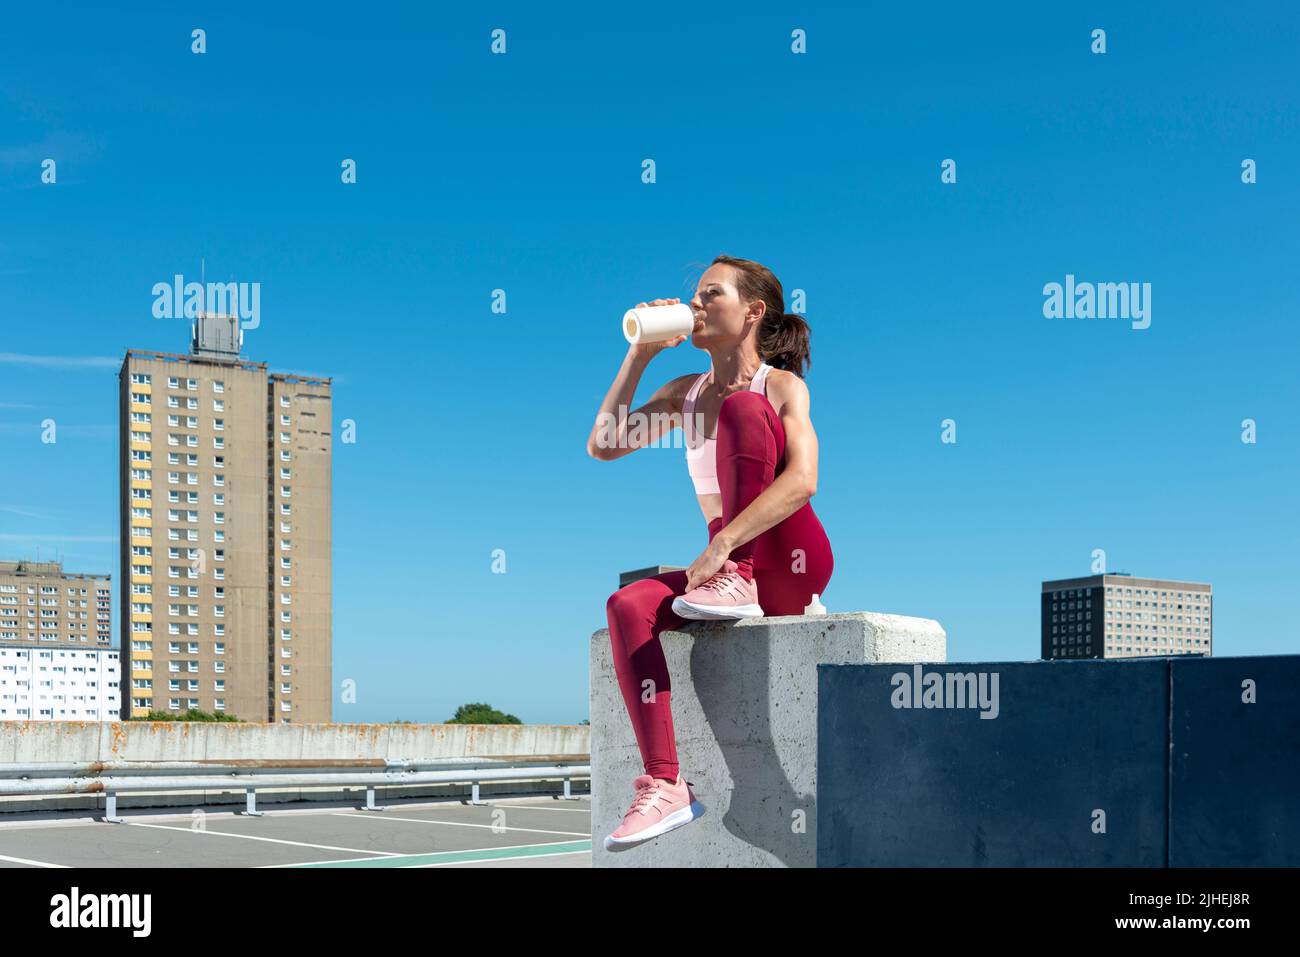 Mujer deportiva bebiendo agua de una botella, sentada descansando después del ejercicio, entorno urbano. Foto de stock